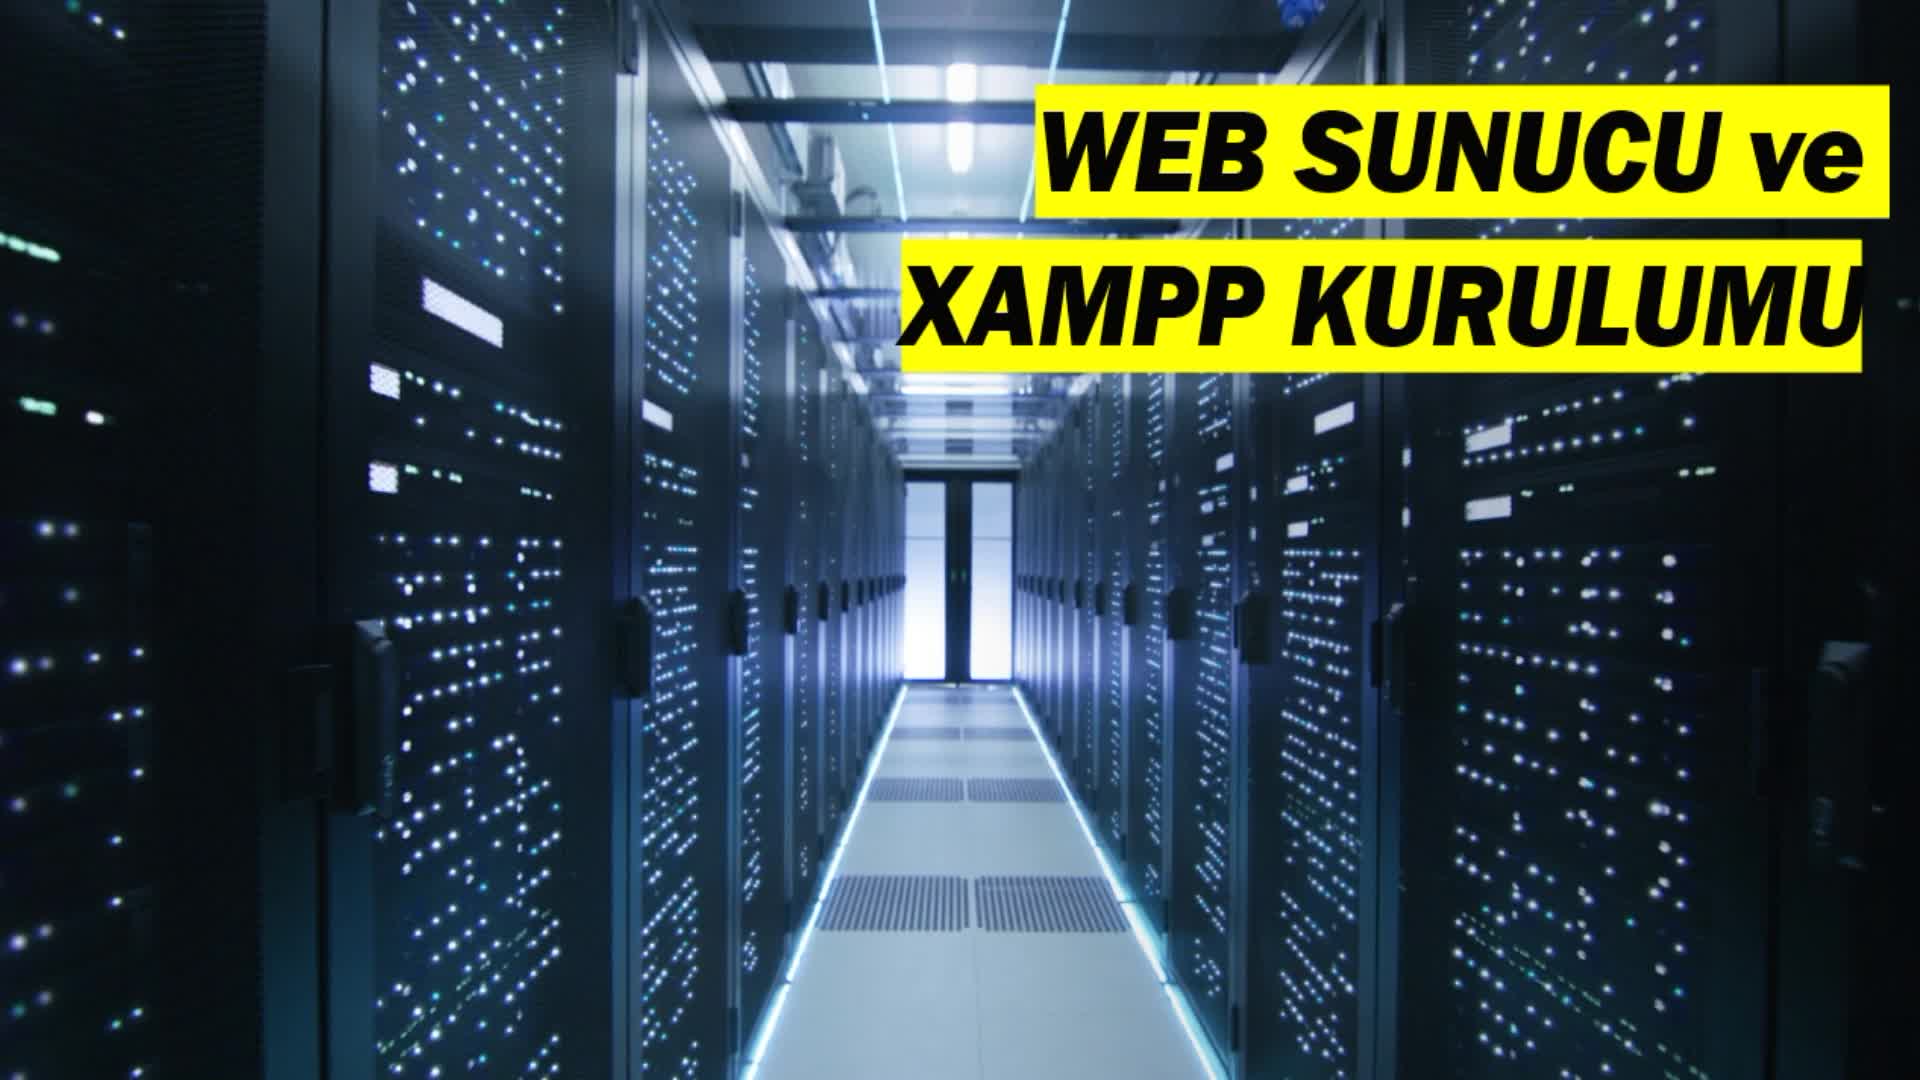 #1 Xampp Kurulumu Ve Web Sunucusu (1)